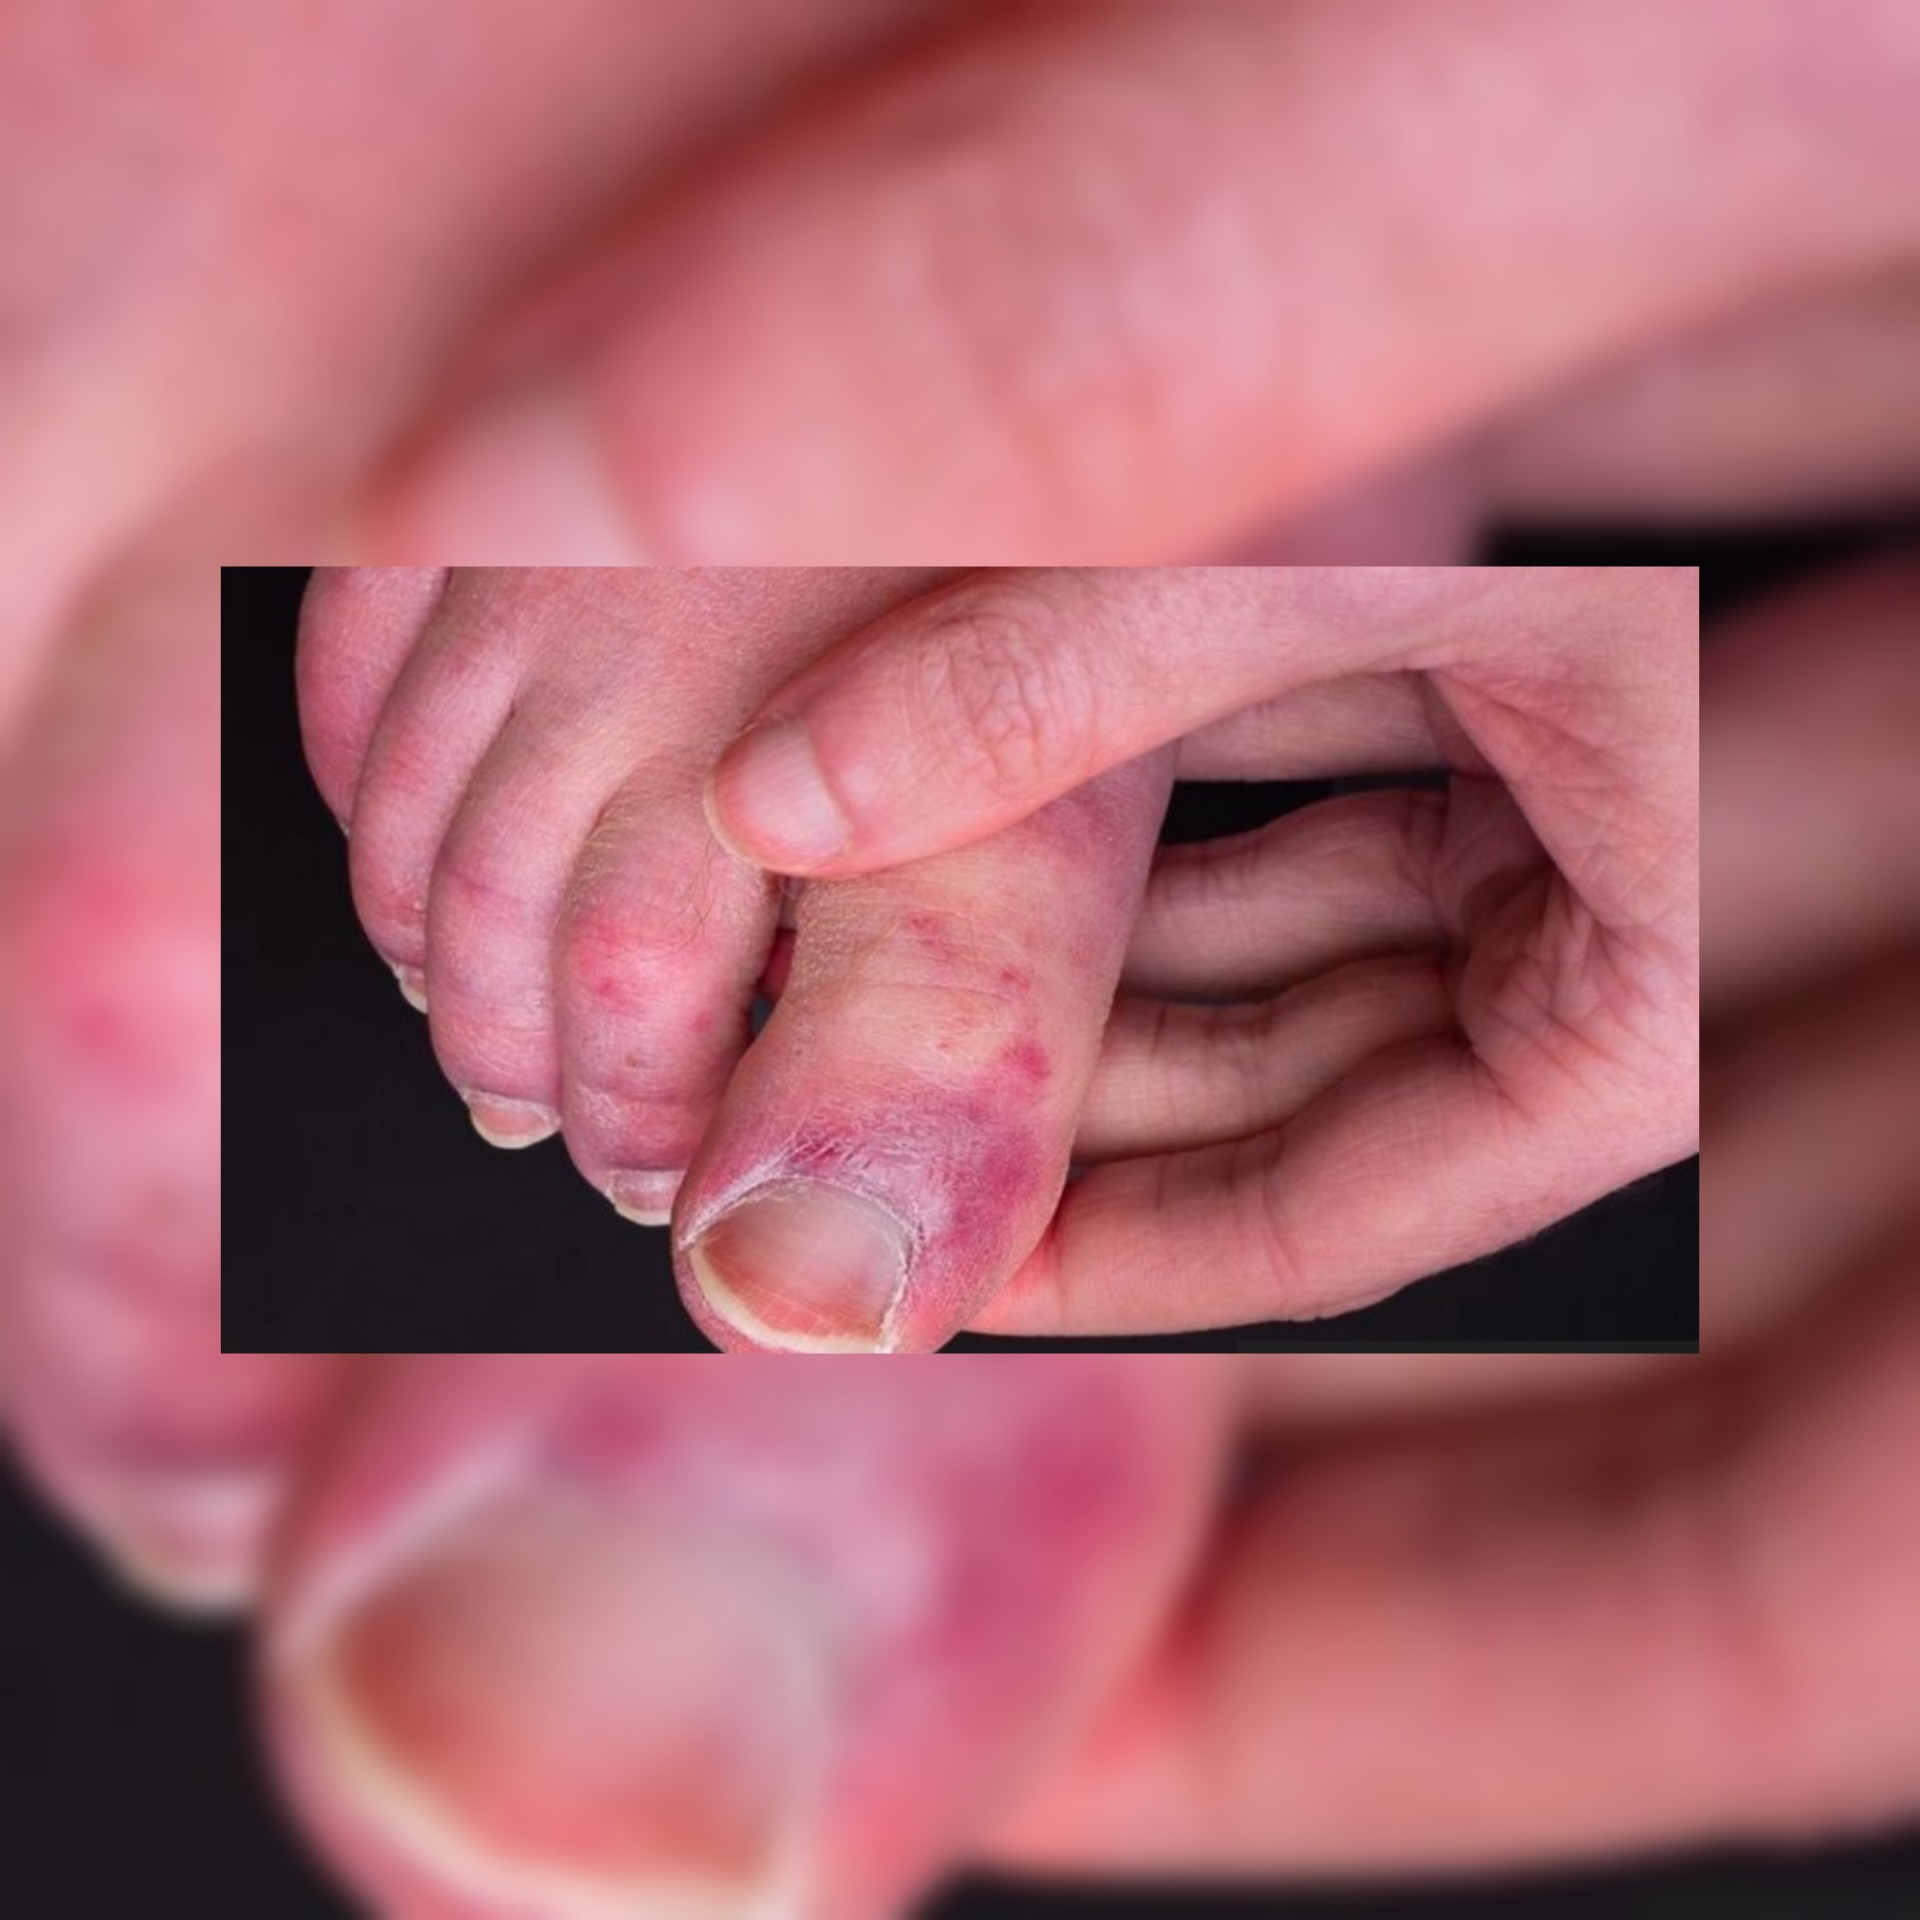 فيروس كورونا : دراسة حديثة تكشف أسباب الإصابة بـأصابع كوفيد ..فما هي أصابع كورونا